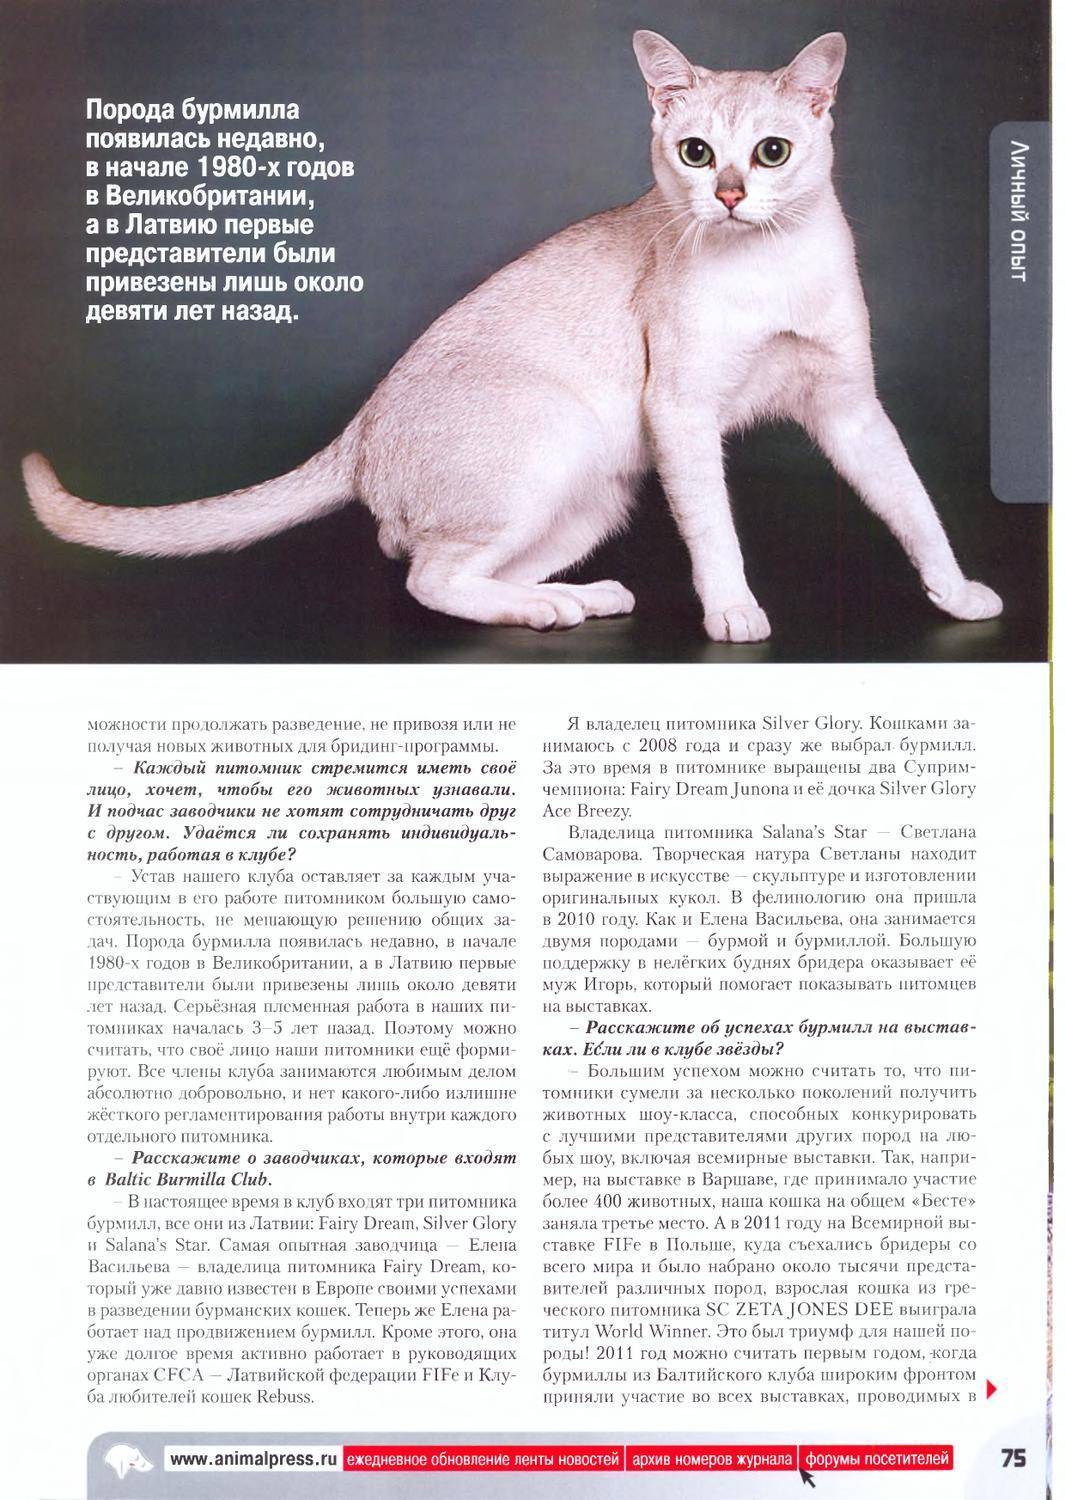 Короткошерстная и длинношерстная бурмилла: описание экстерьера с фото, характер кошки, содержание представителей породы